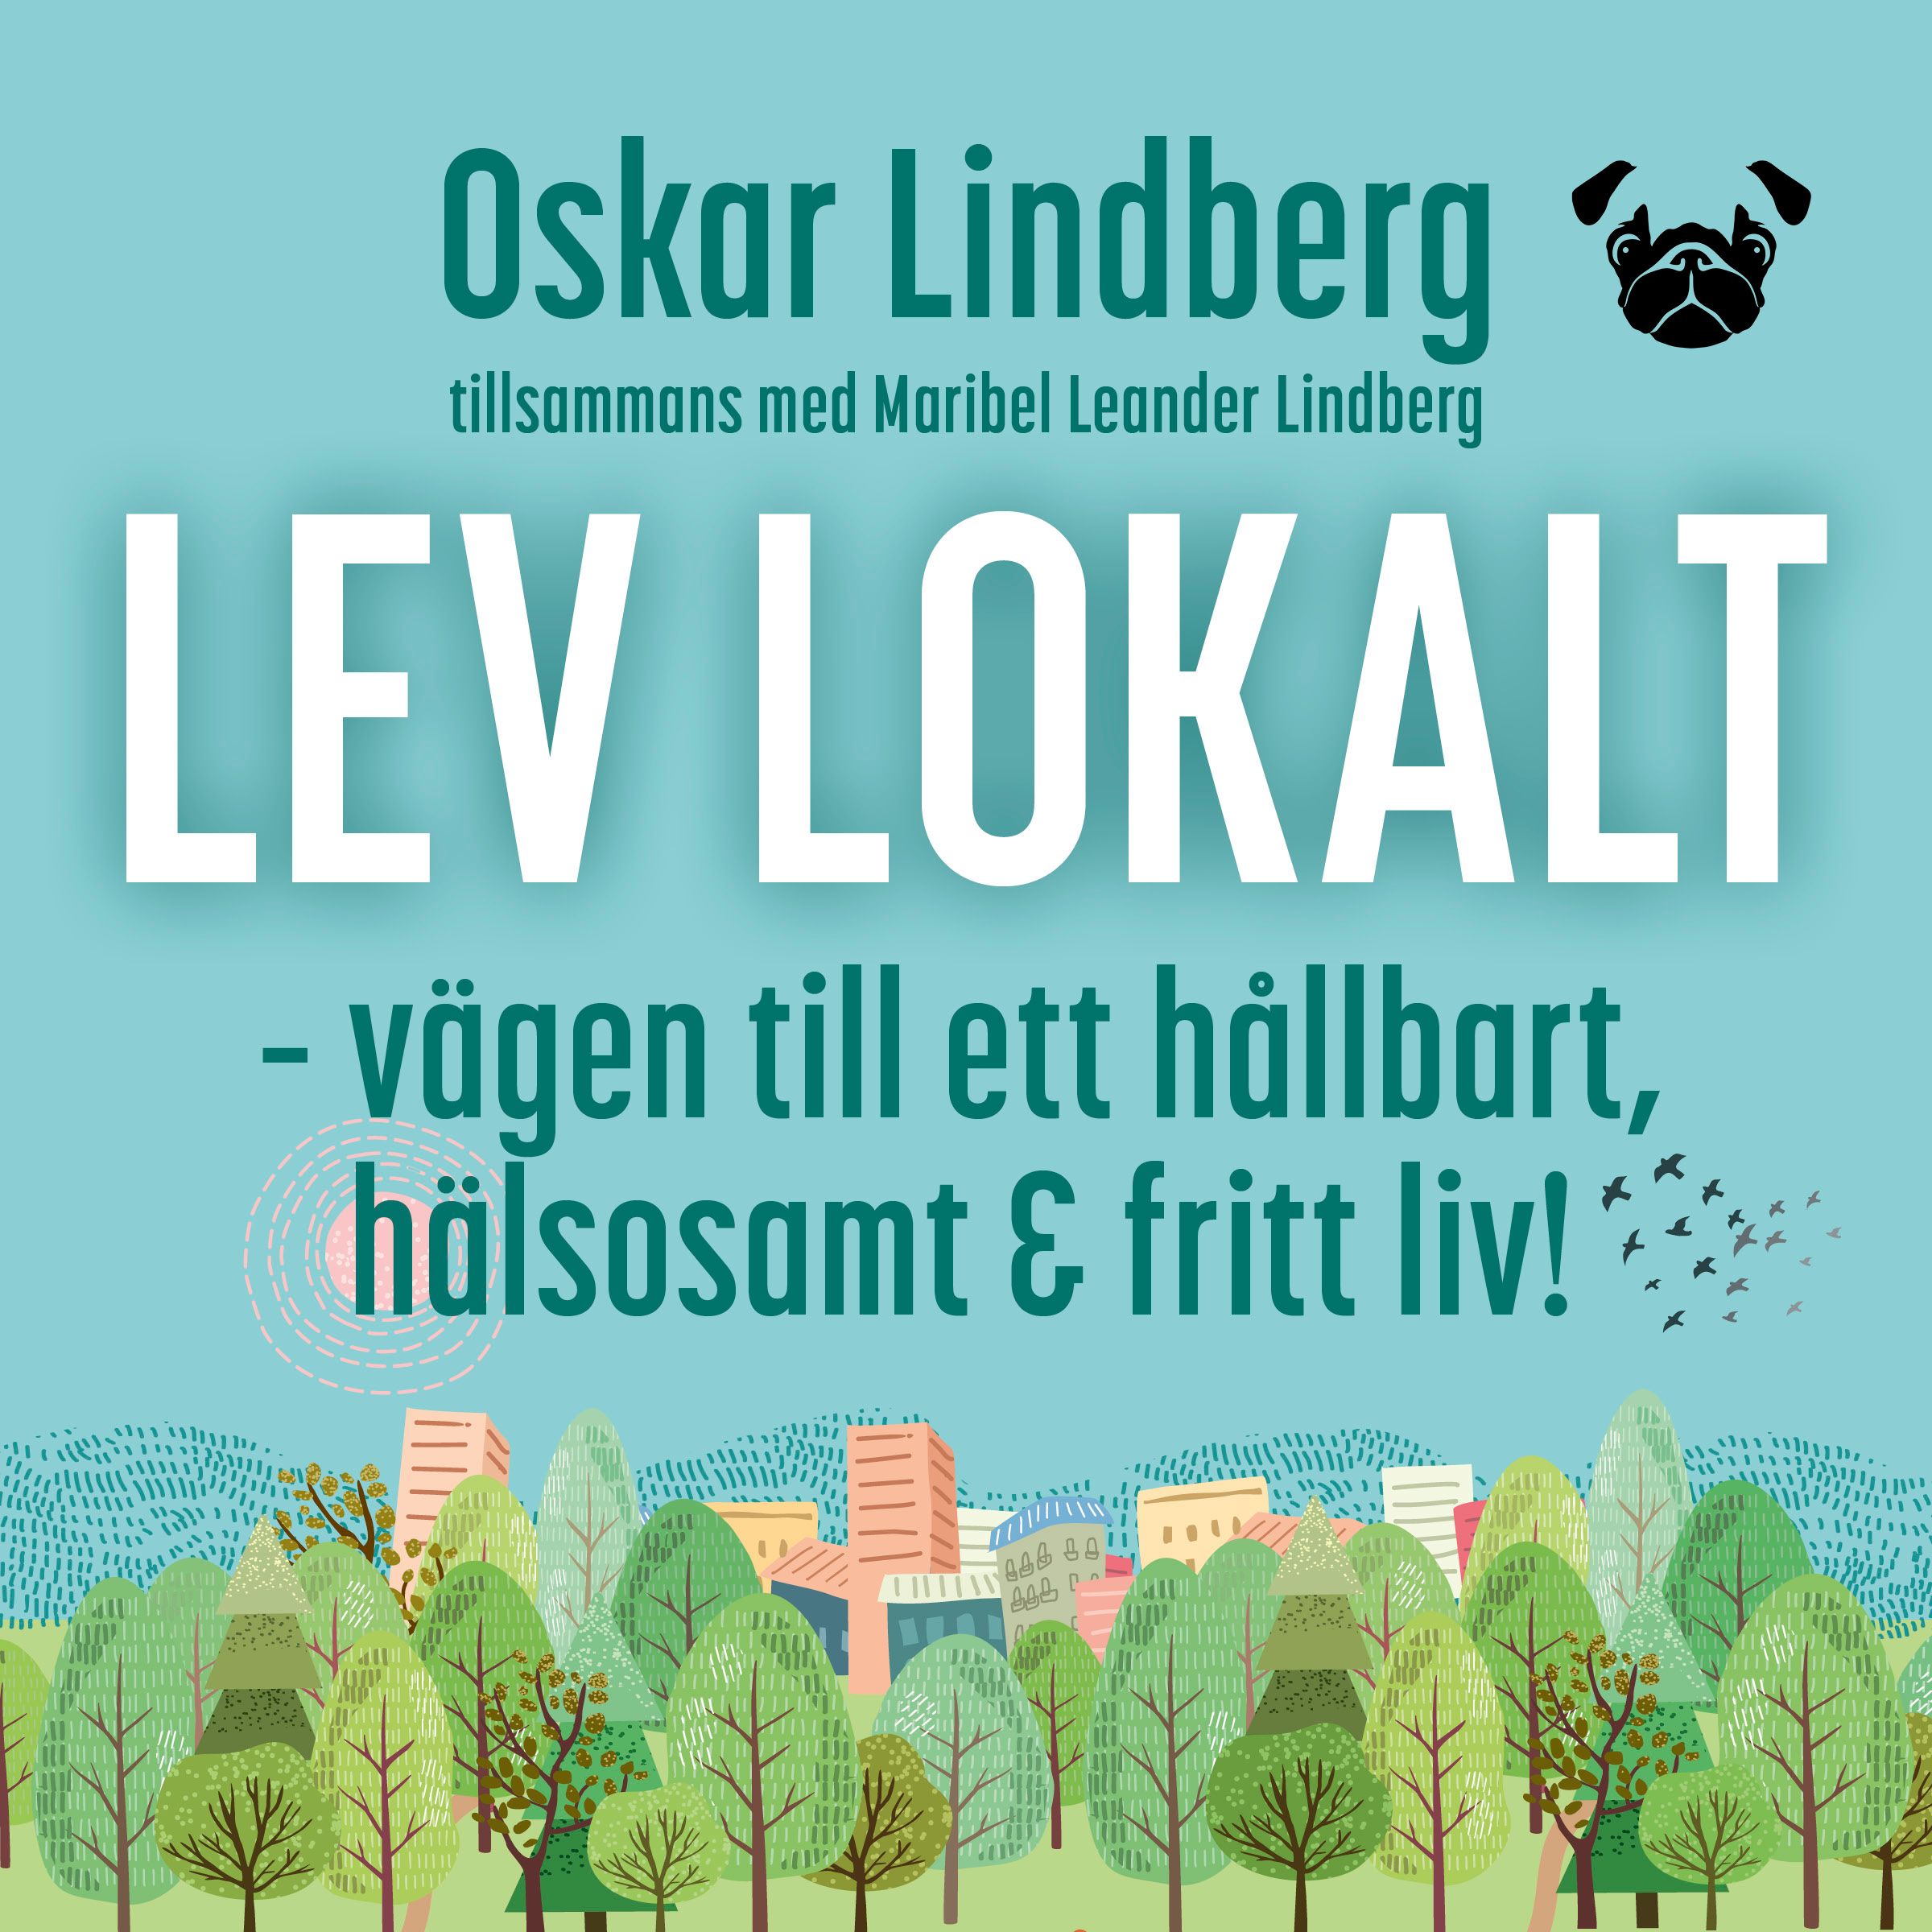 Lev lokalt – vägen till ett hållbart, hälsosamt och fritt liv!, ljudbok av Oskar Lindberg